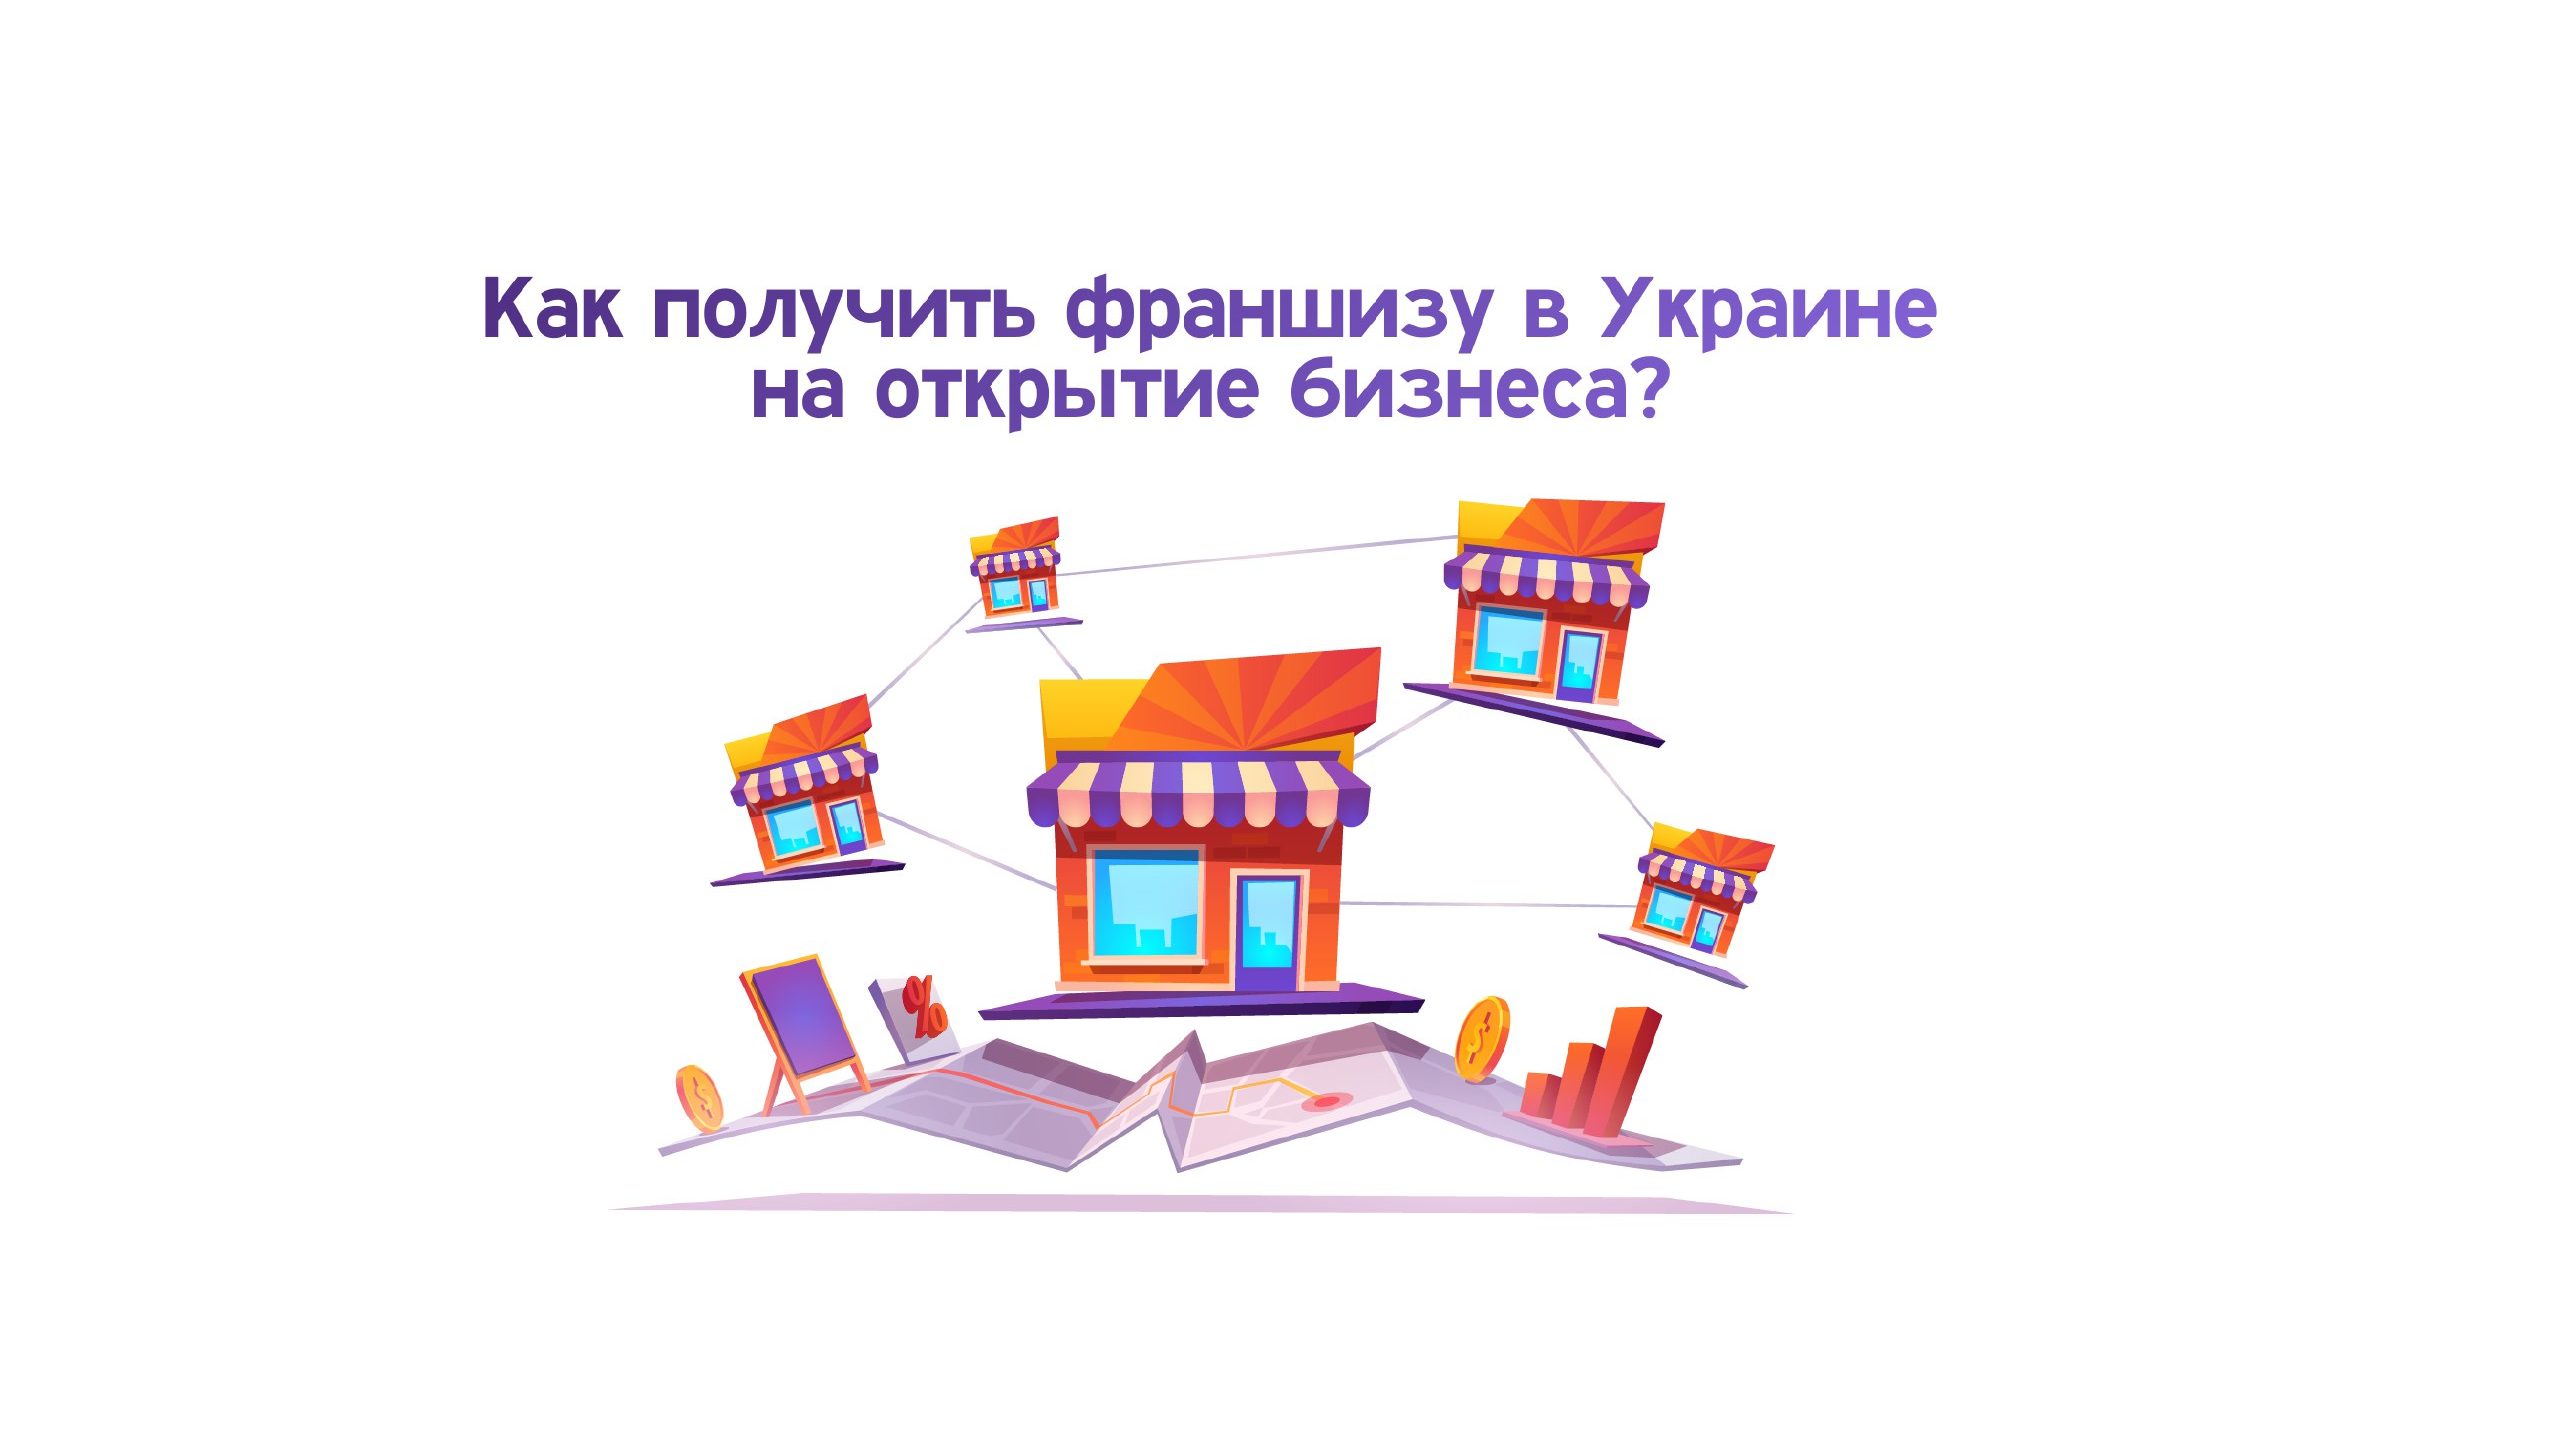 Как получить франшизу в Украине на открытие бизнеса?